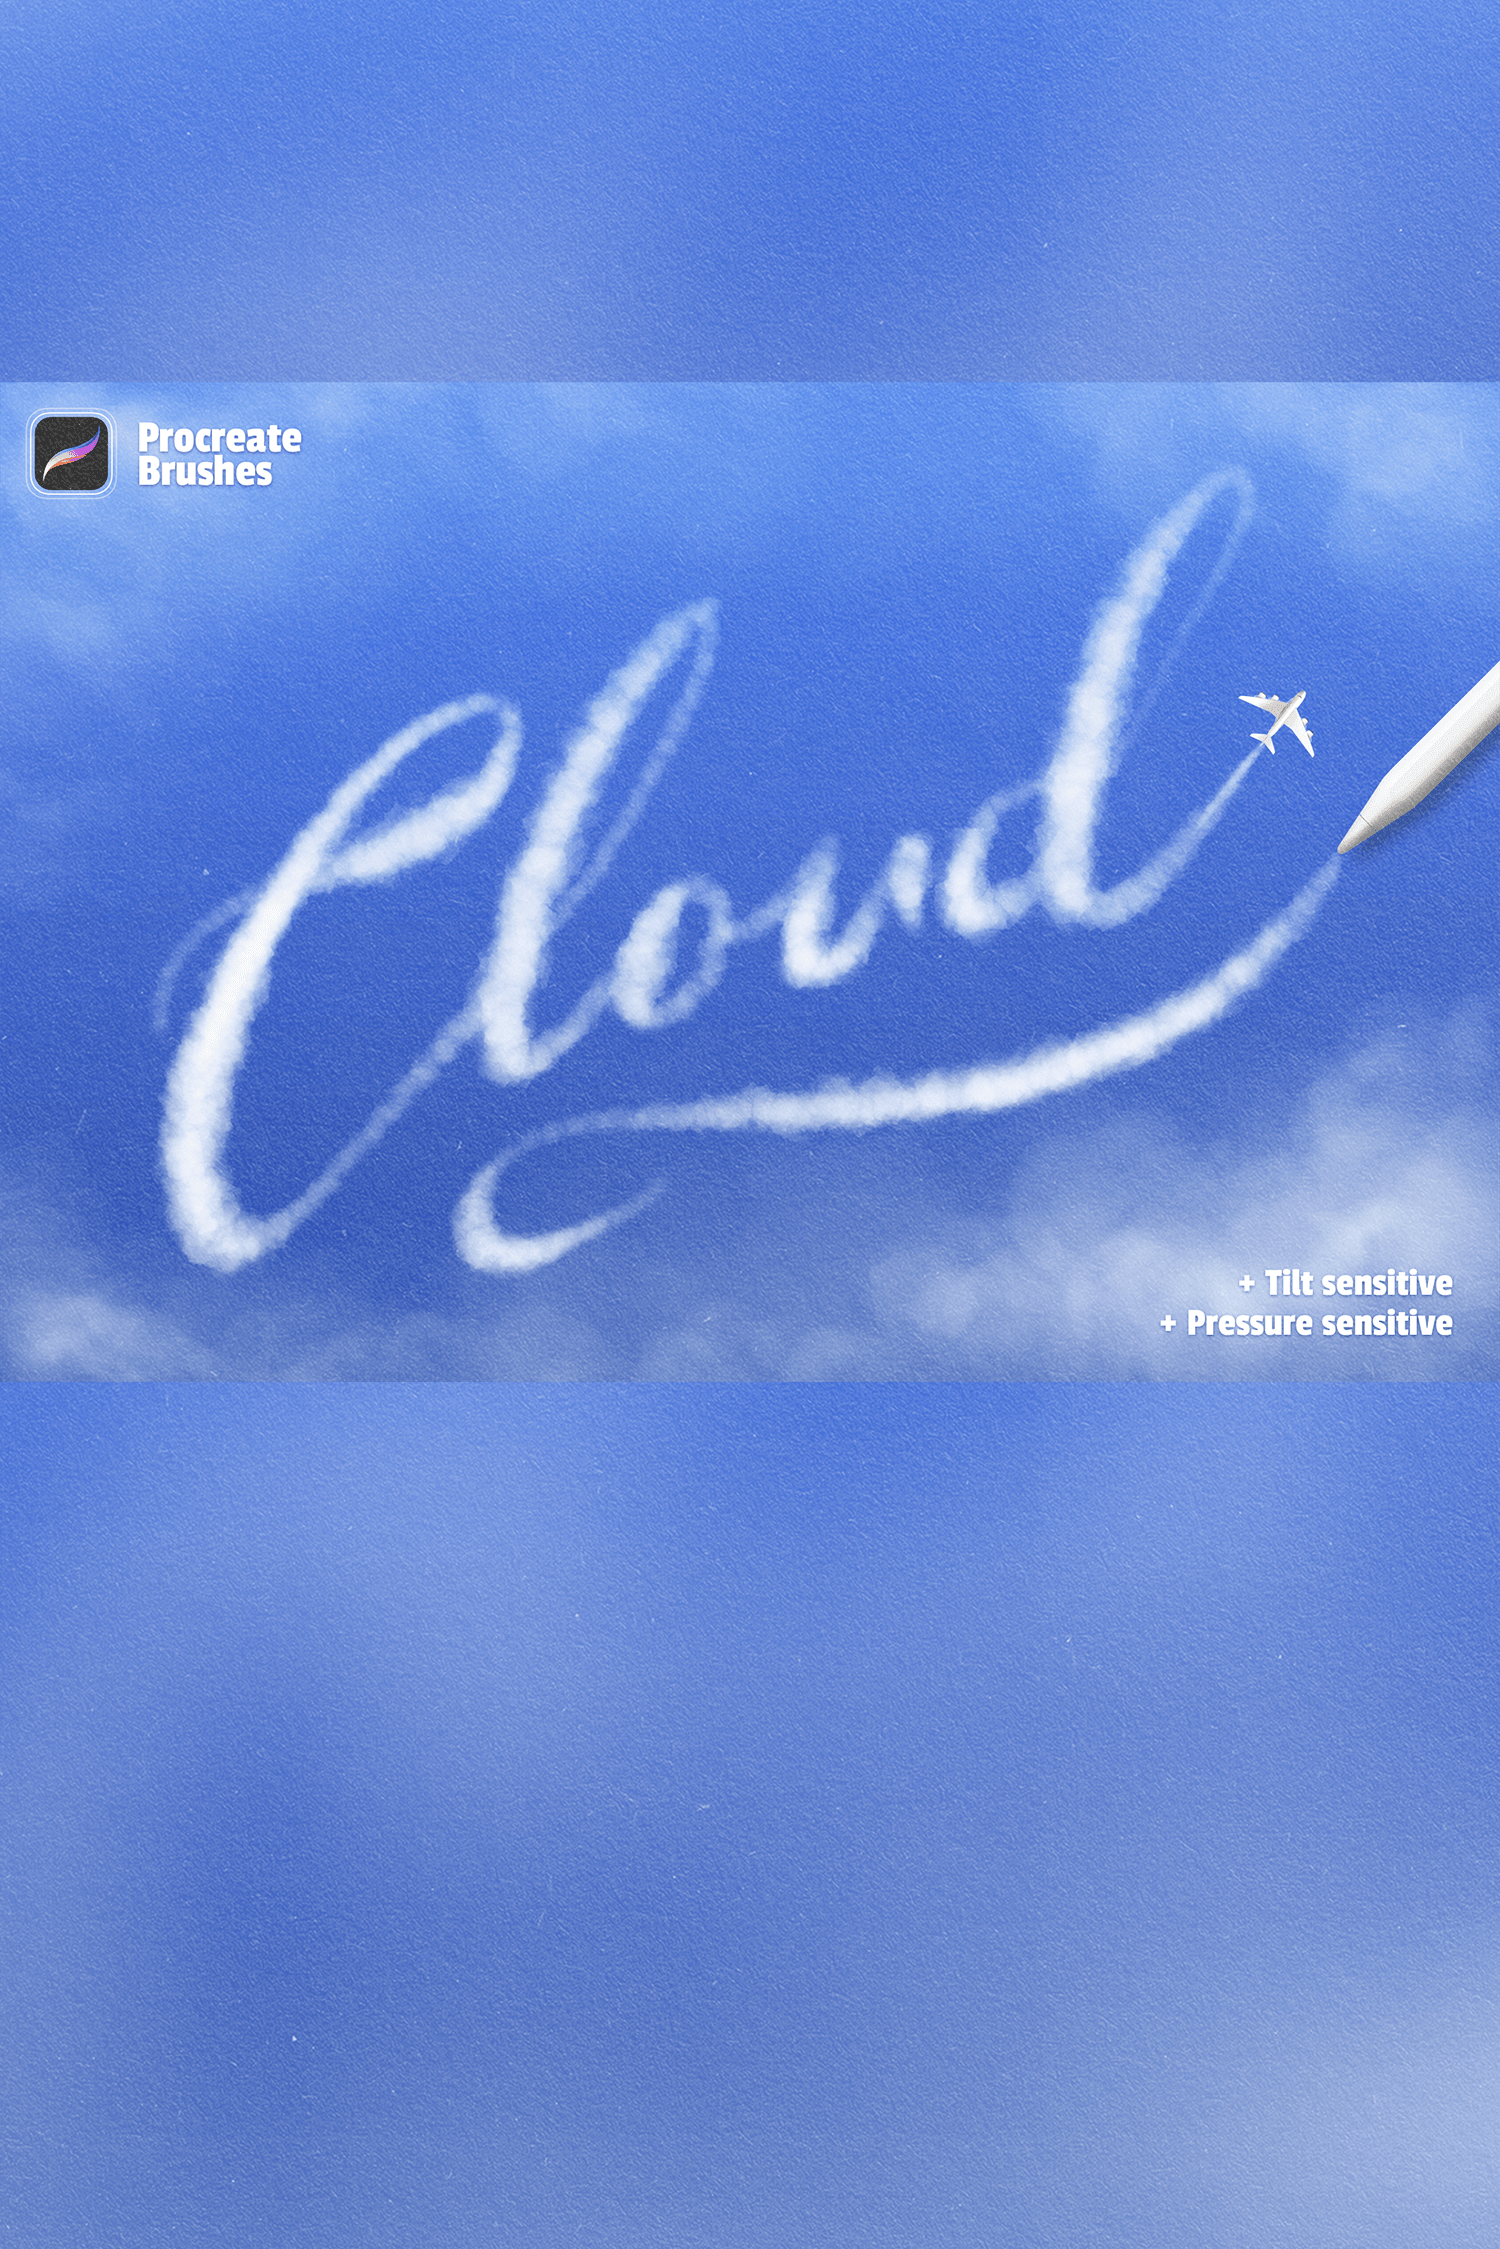 Clouds Brushset By Andrew Skoch